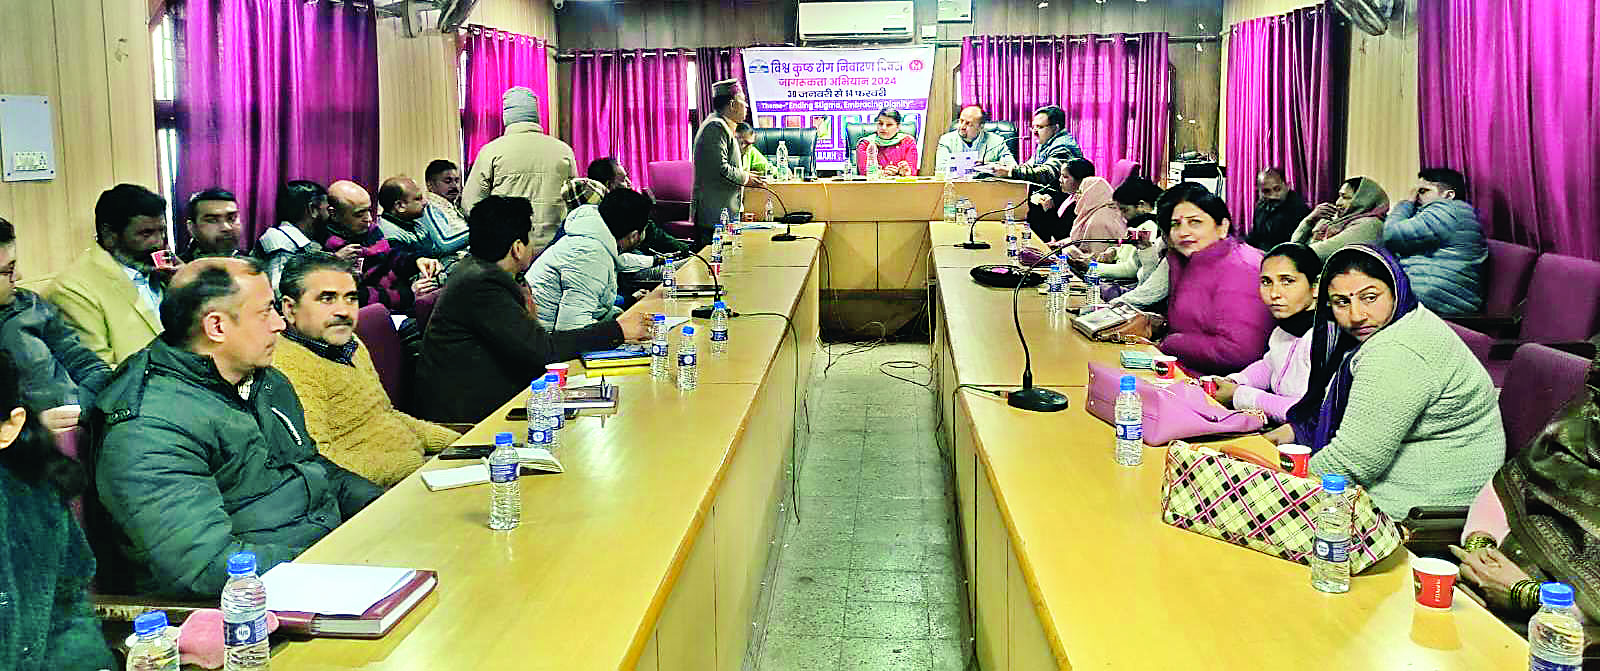 बीडीसी नालागढ़ की बैठक में गुंजा सफाई का मुद्दा